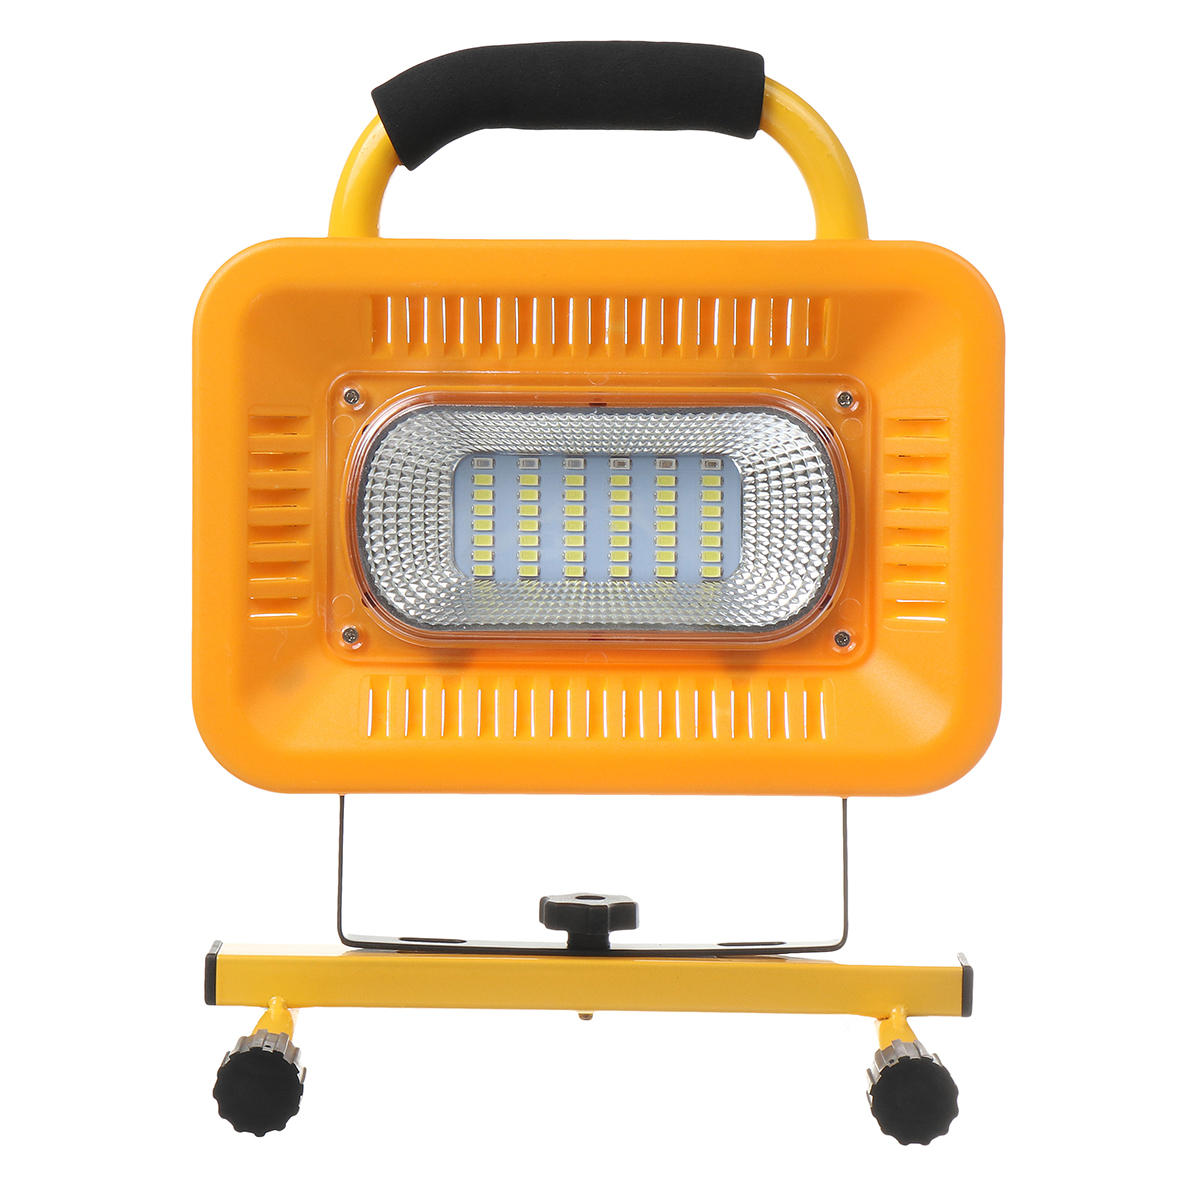 Linterna de camping LED de 48 luces impermeable con 3 modos de trabajo, banco de energía para viajes al aire libre.